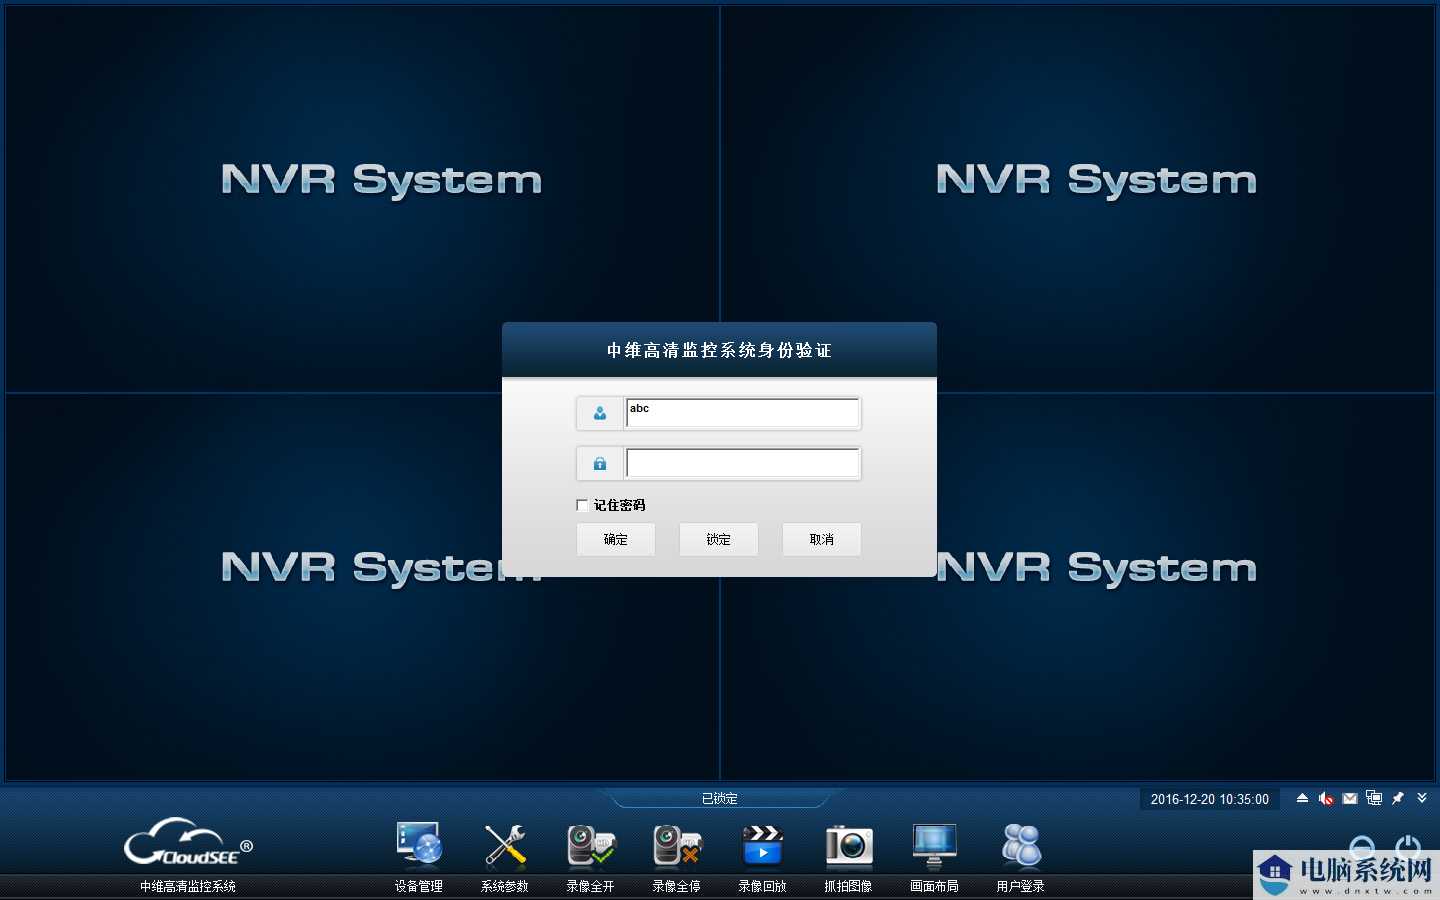 中维高清监控系统(JNVR)